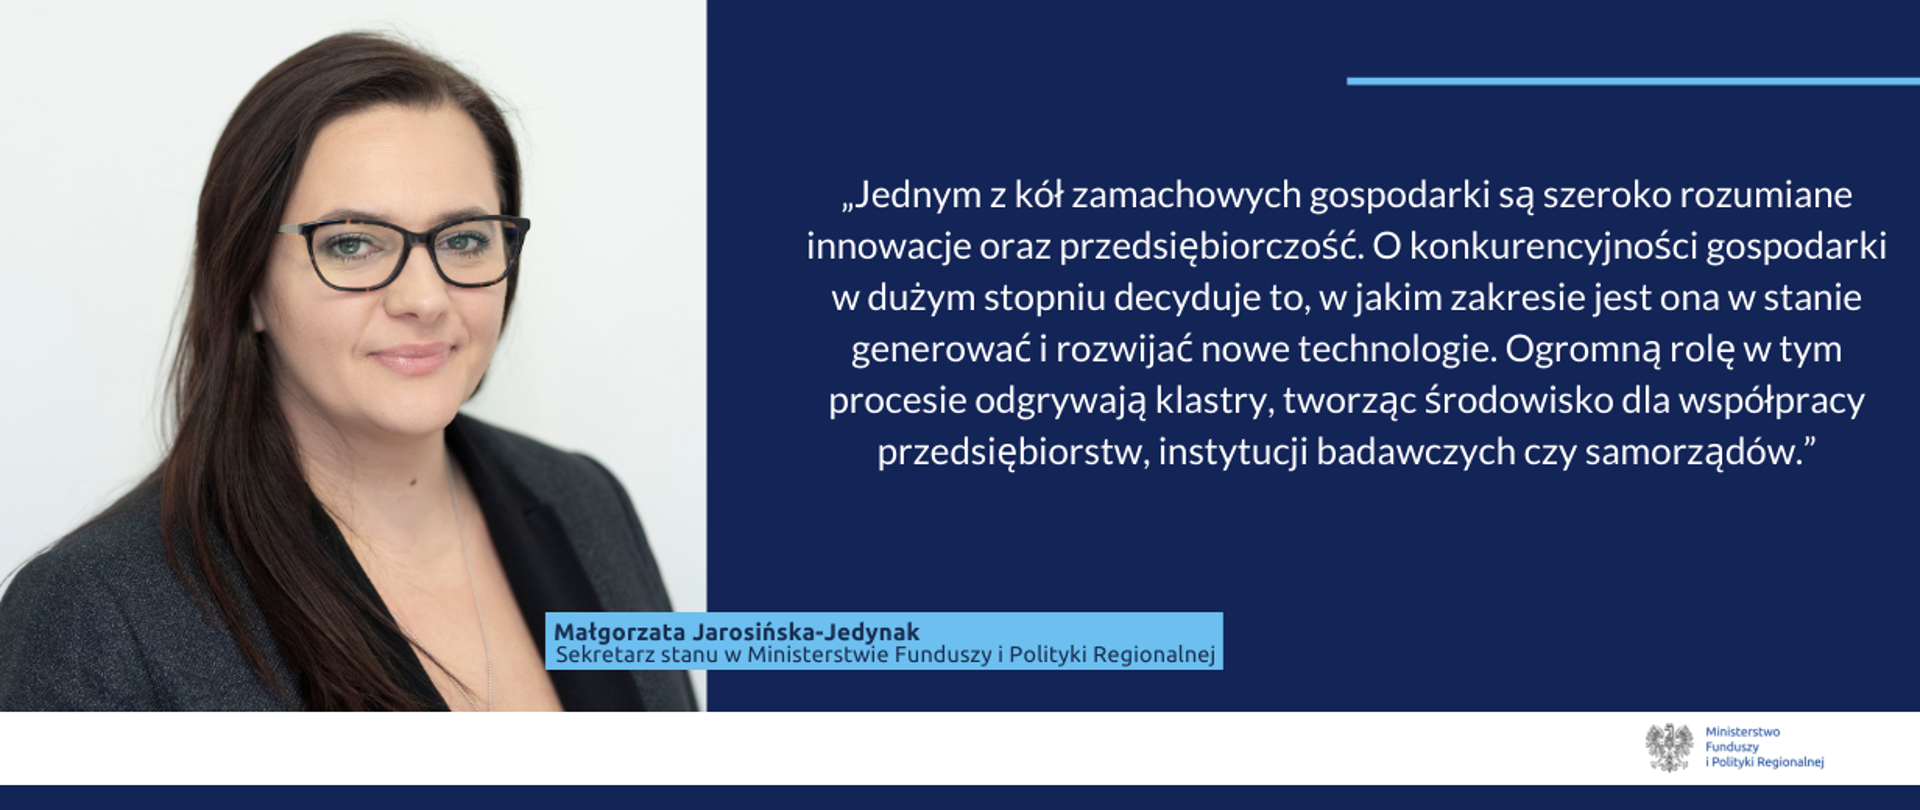 Cytat minister Jarosińskiej-Jedynak o wsparciu przedsiębiorczości i innowacji. 